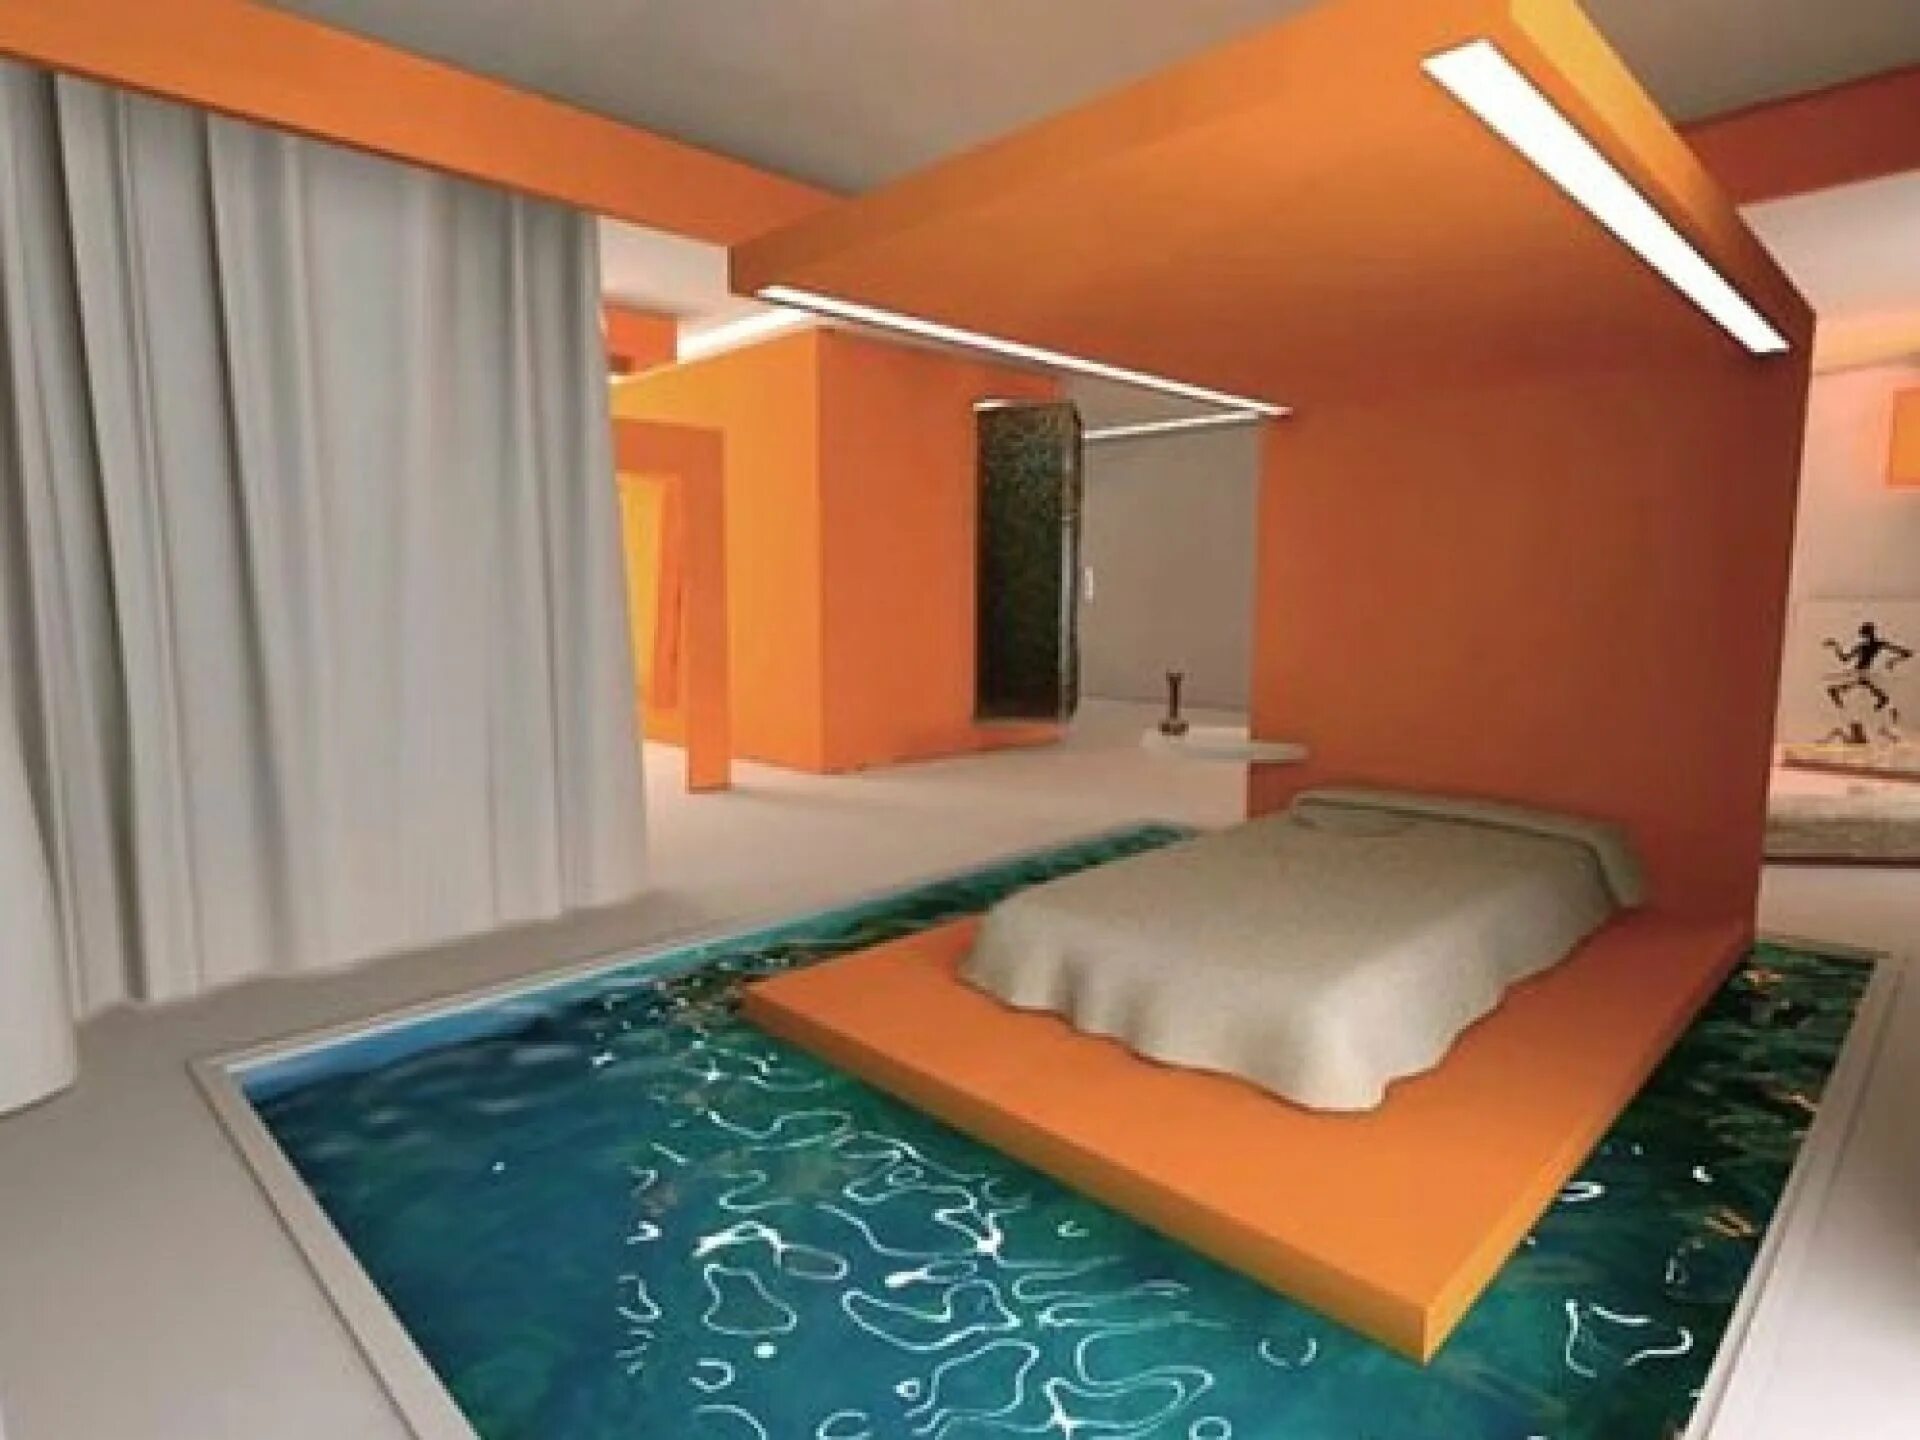 Спальня с бассейном. Бассейн в спальне. Комната с бассейном и кроватью. Бассейн в комнате. Bedroom pool